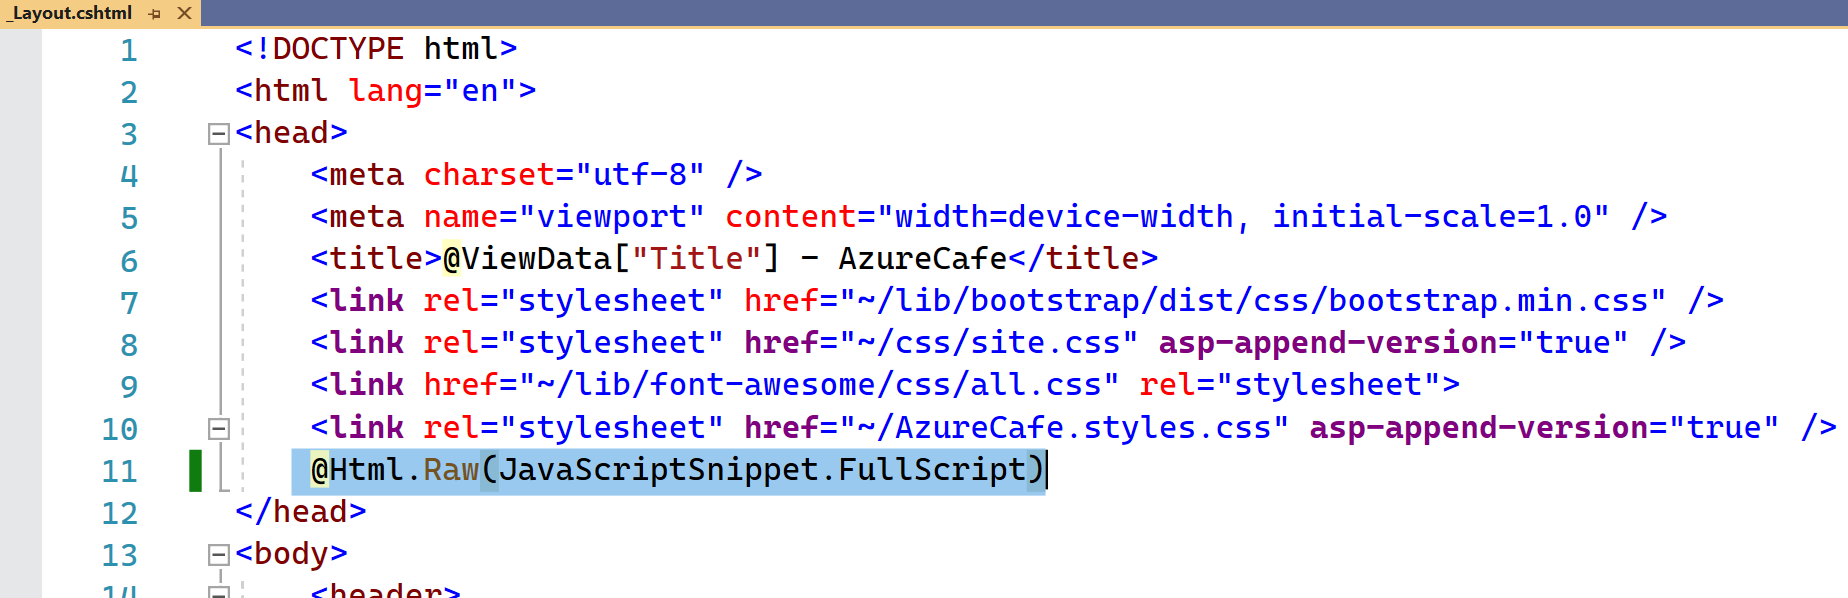 Skärmbild av filen _Layout.cshtml i Visual Studio med föregående kodrad markerad i huvudavsnittet i filen.